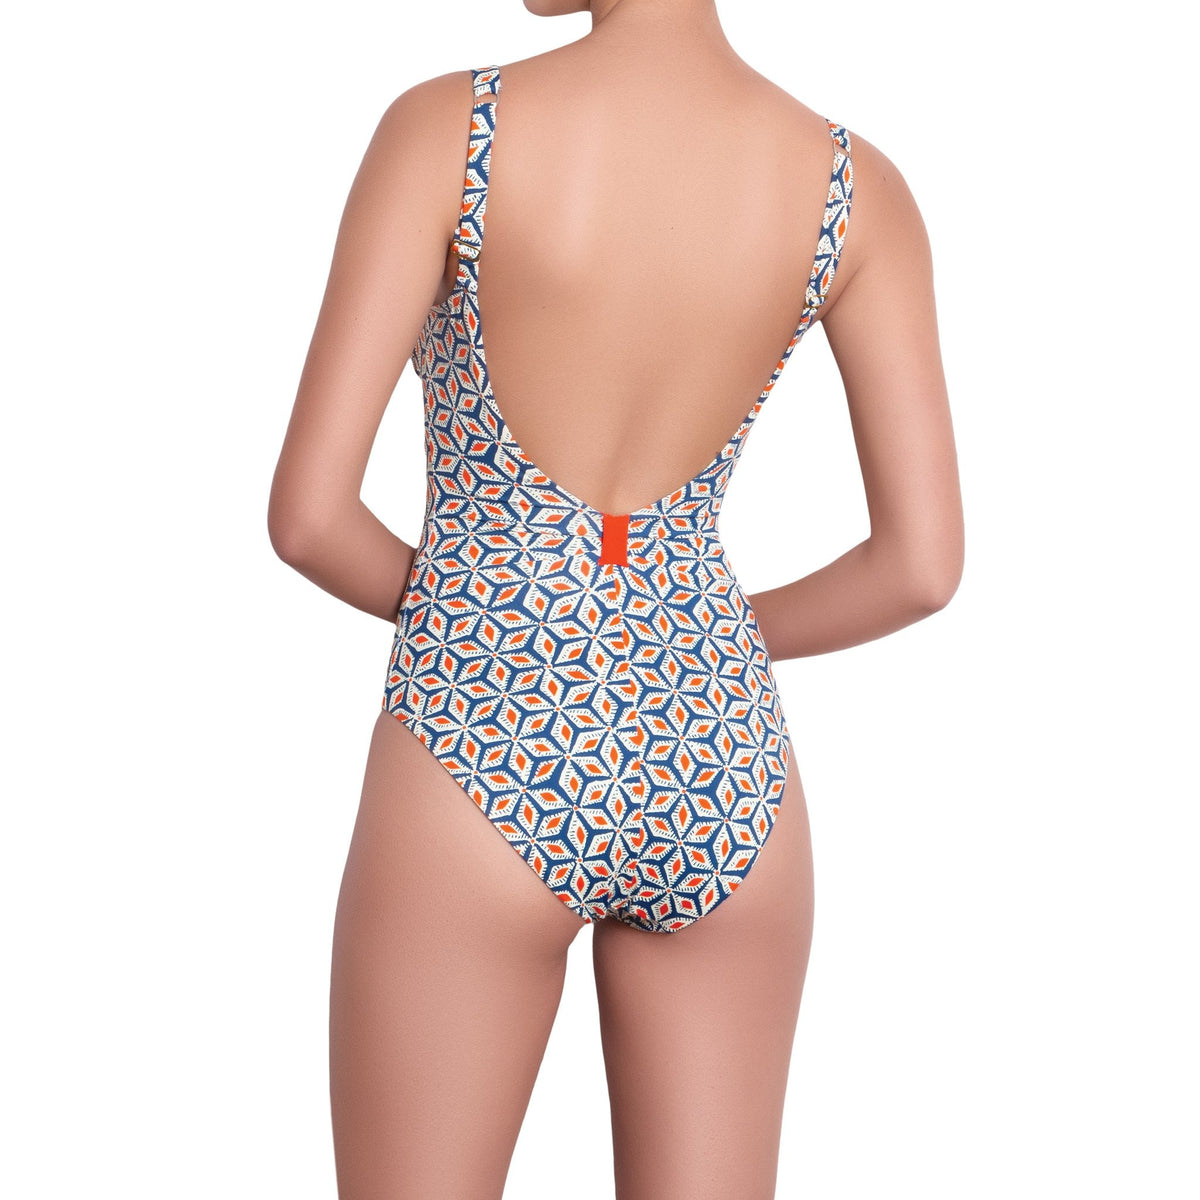 B√âR√âNICE underwired one piece, printed swimsuit by ALMA swimwear ‚Äì back view 